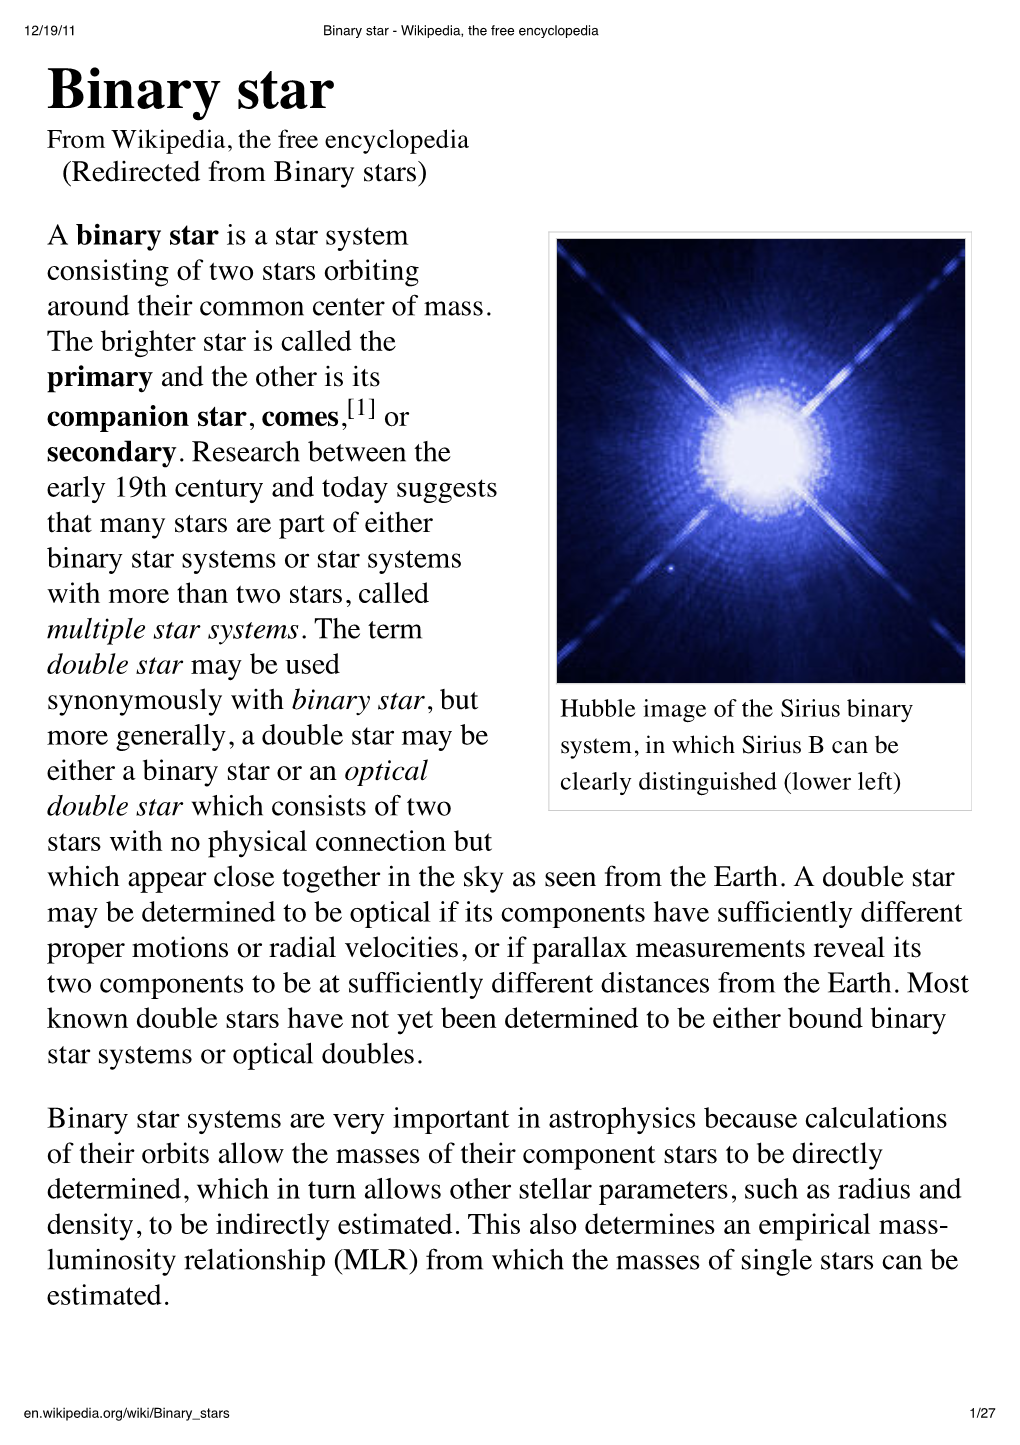 Binary Star - Wikipedia, the Free Encyclopedia Binary Star from Wikipedia, the Free Encyclopedia (Redirected from Binary Stars)